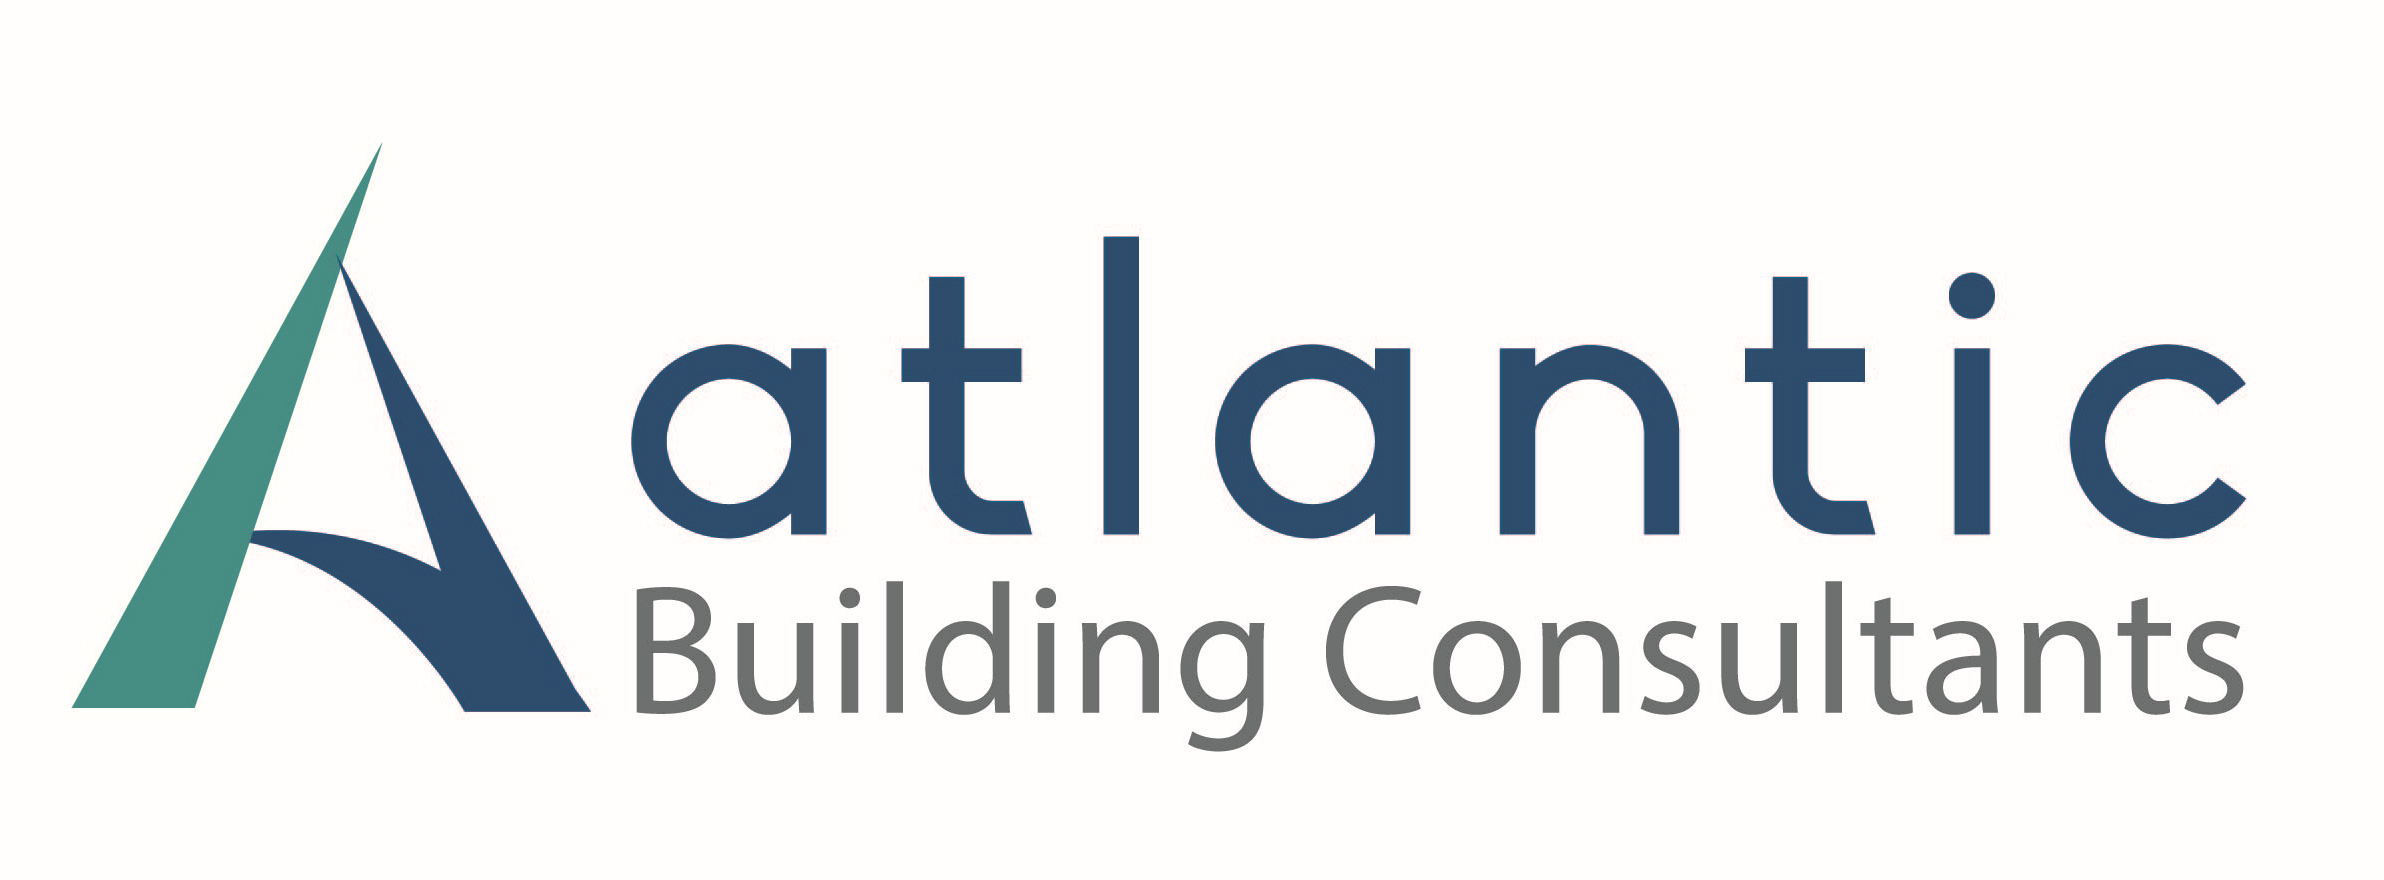 Atlantic Building Consultants Ltd